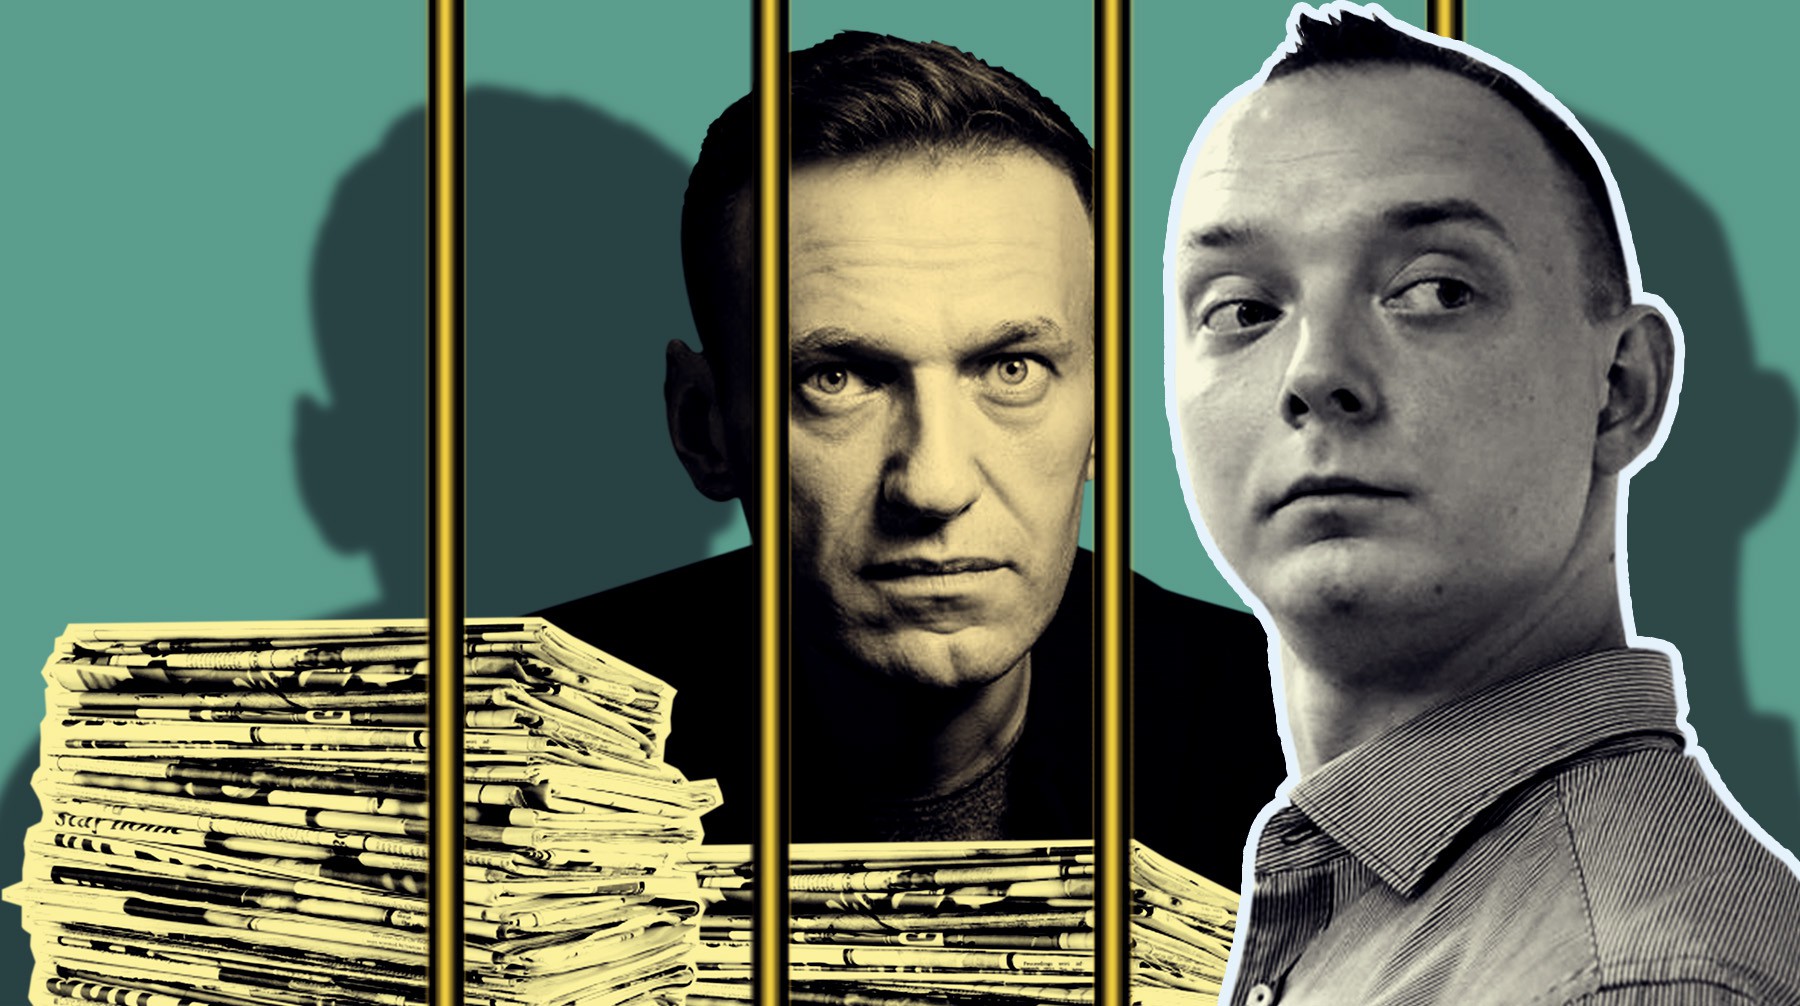 Dailystorm - Адвокат рассказал, что Сафронов думает об аресте Навального и как часто он читает новости